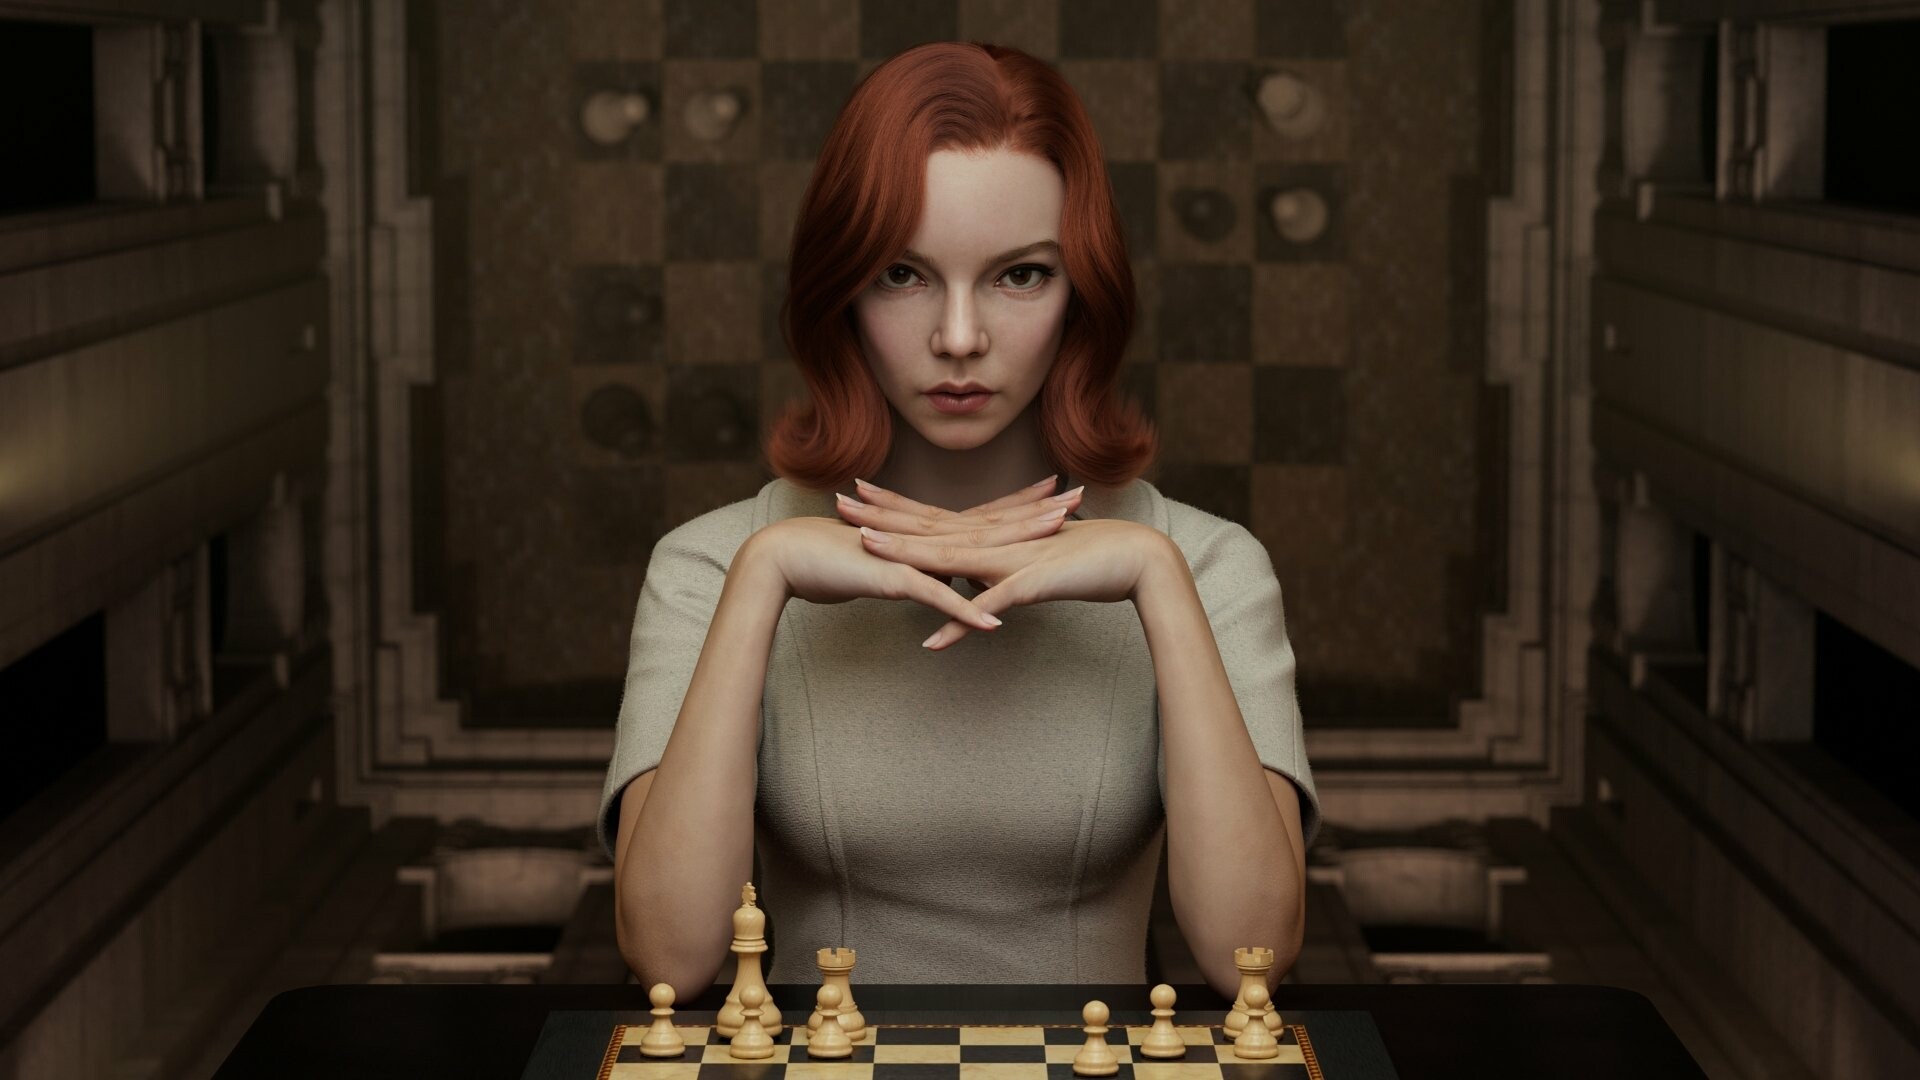 The Queen's Gambit: Art poster, Chess match, Canada. 1920x1080 Full HD Wallpaper.